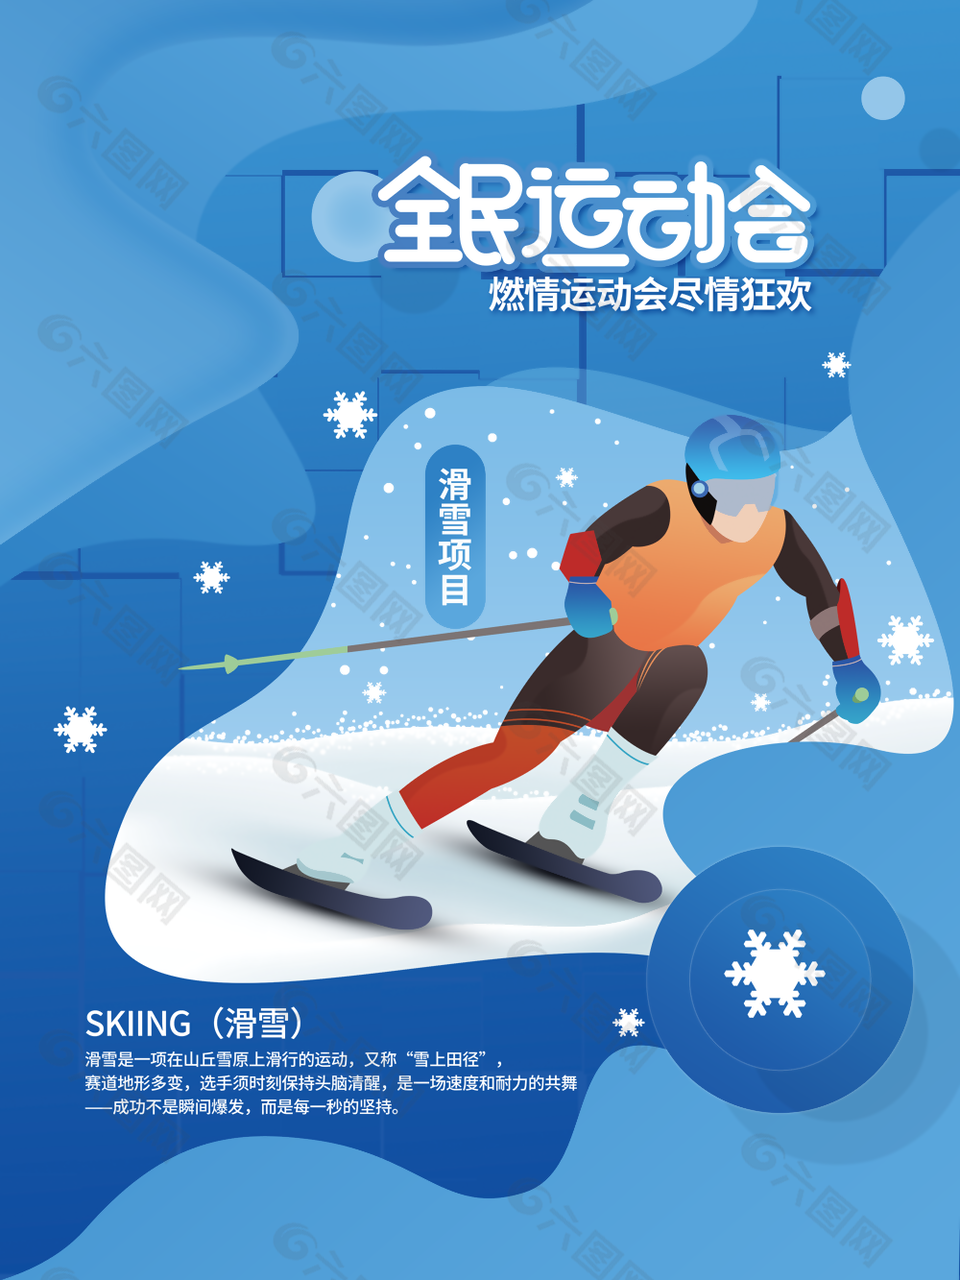 蓝色插画风全民运动会滑雪项目海报图设计